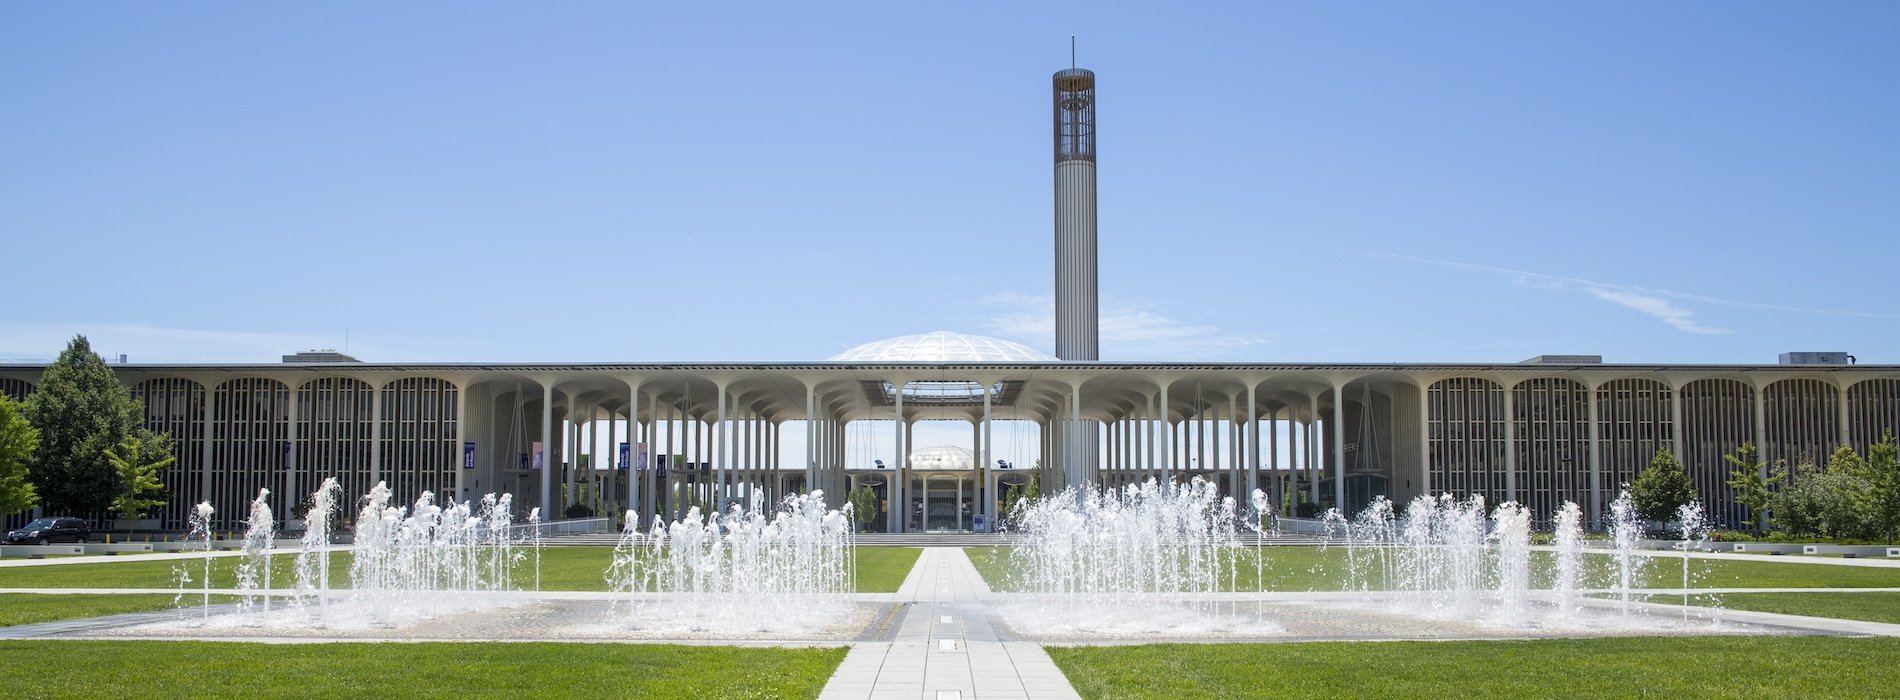 Campus entrance fountain